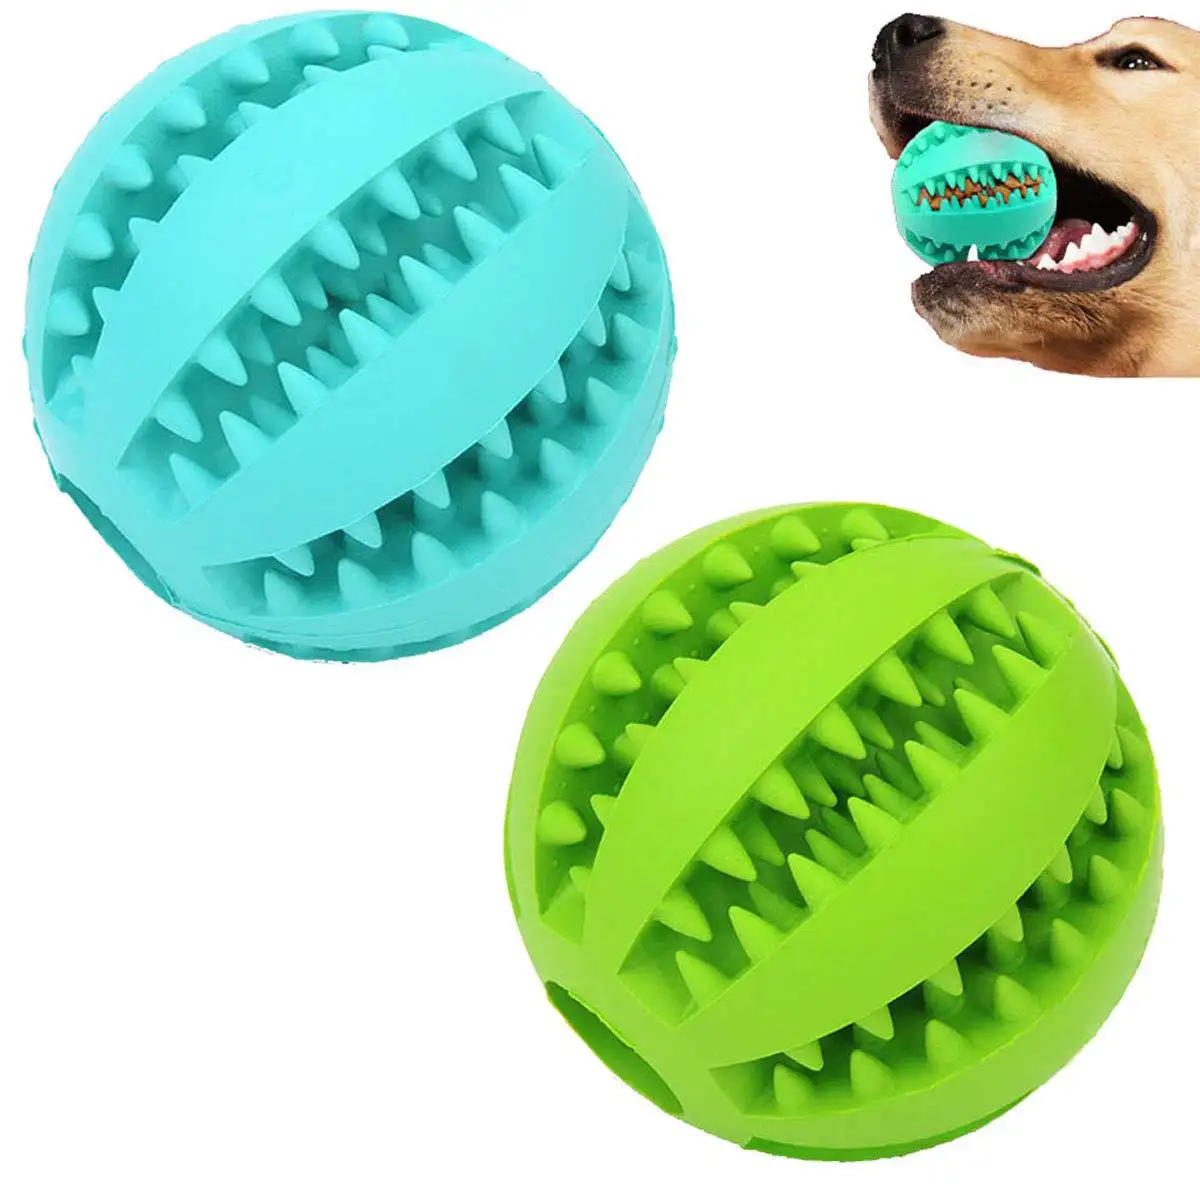 Personalizado Tpr Treinamento Durável Pet Molar Morrer De Borracha Interativo Filhote De Cachorro Soando Squeaky Tênis Chew Toy Dog Ball